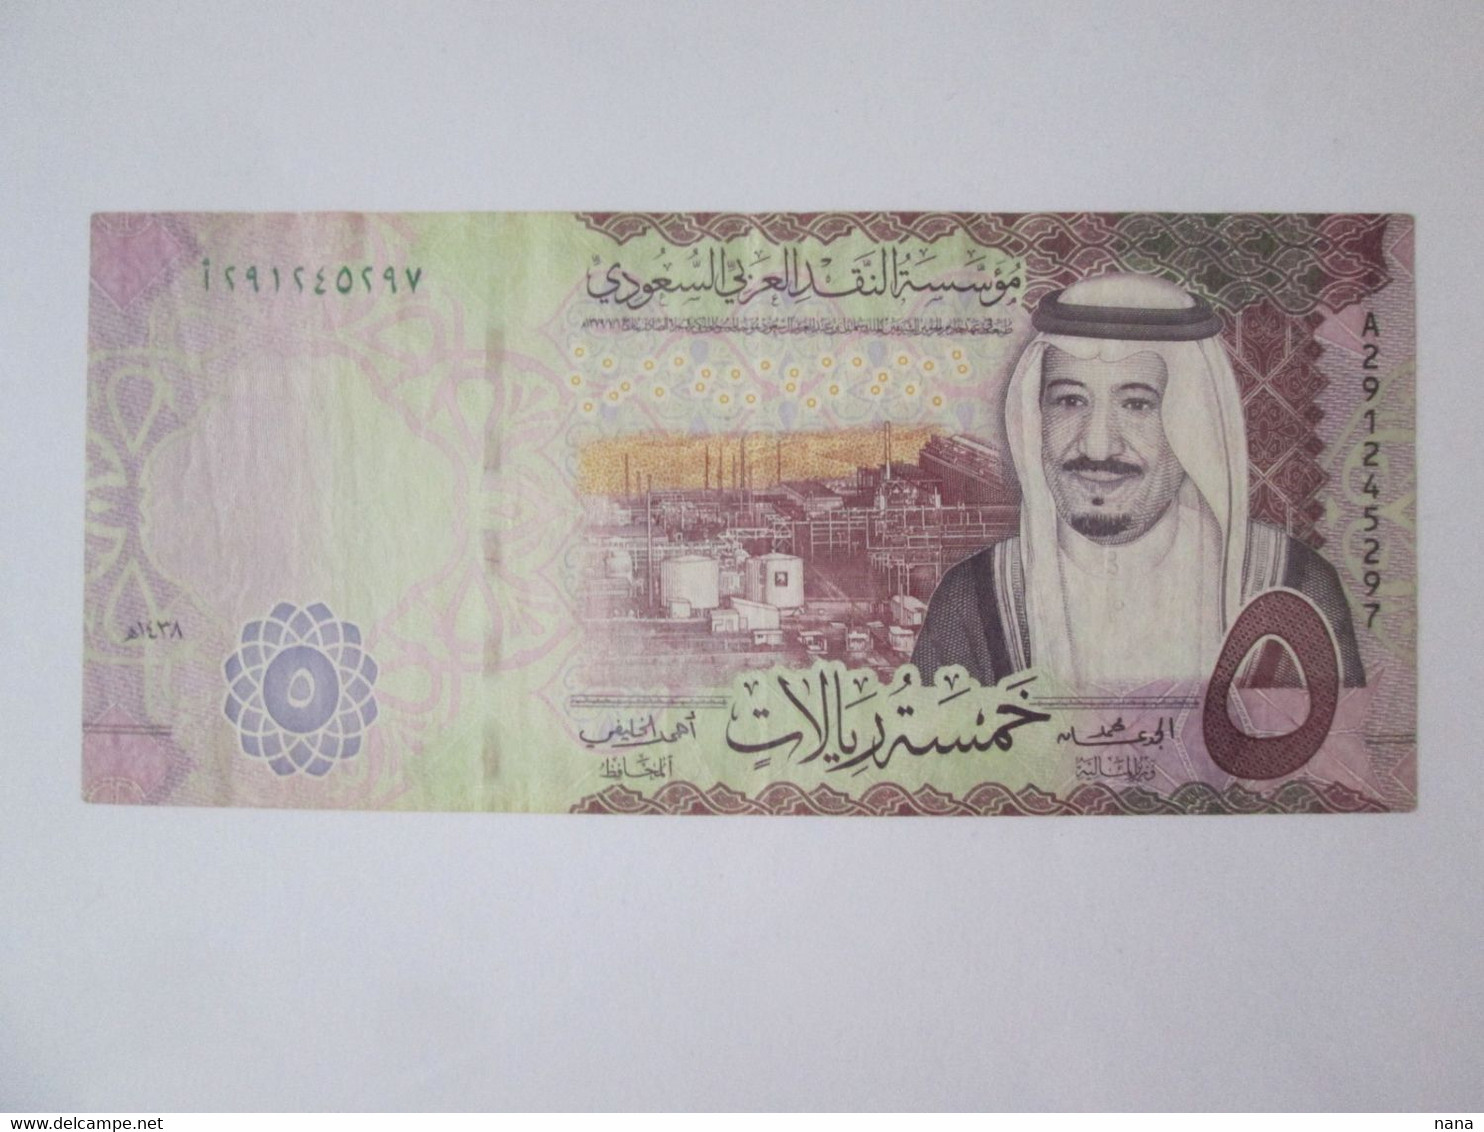 Saudi Arabia 5 Riyals 2017 Banknote - Saudi Arabia